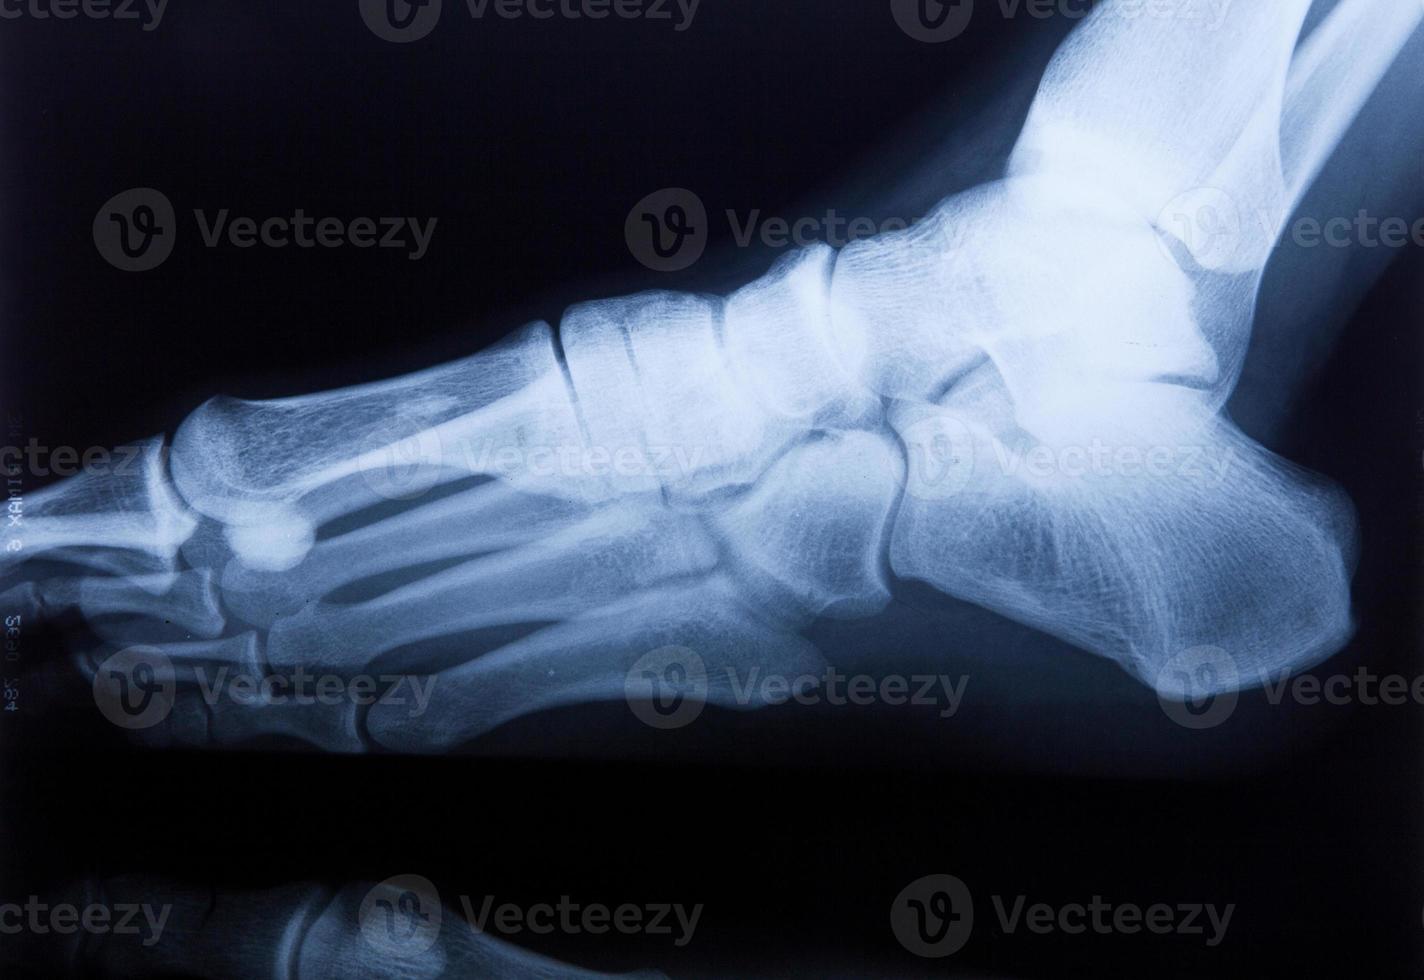 cheville pieds et genou douleurs articulaires film IRM humain photo